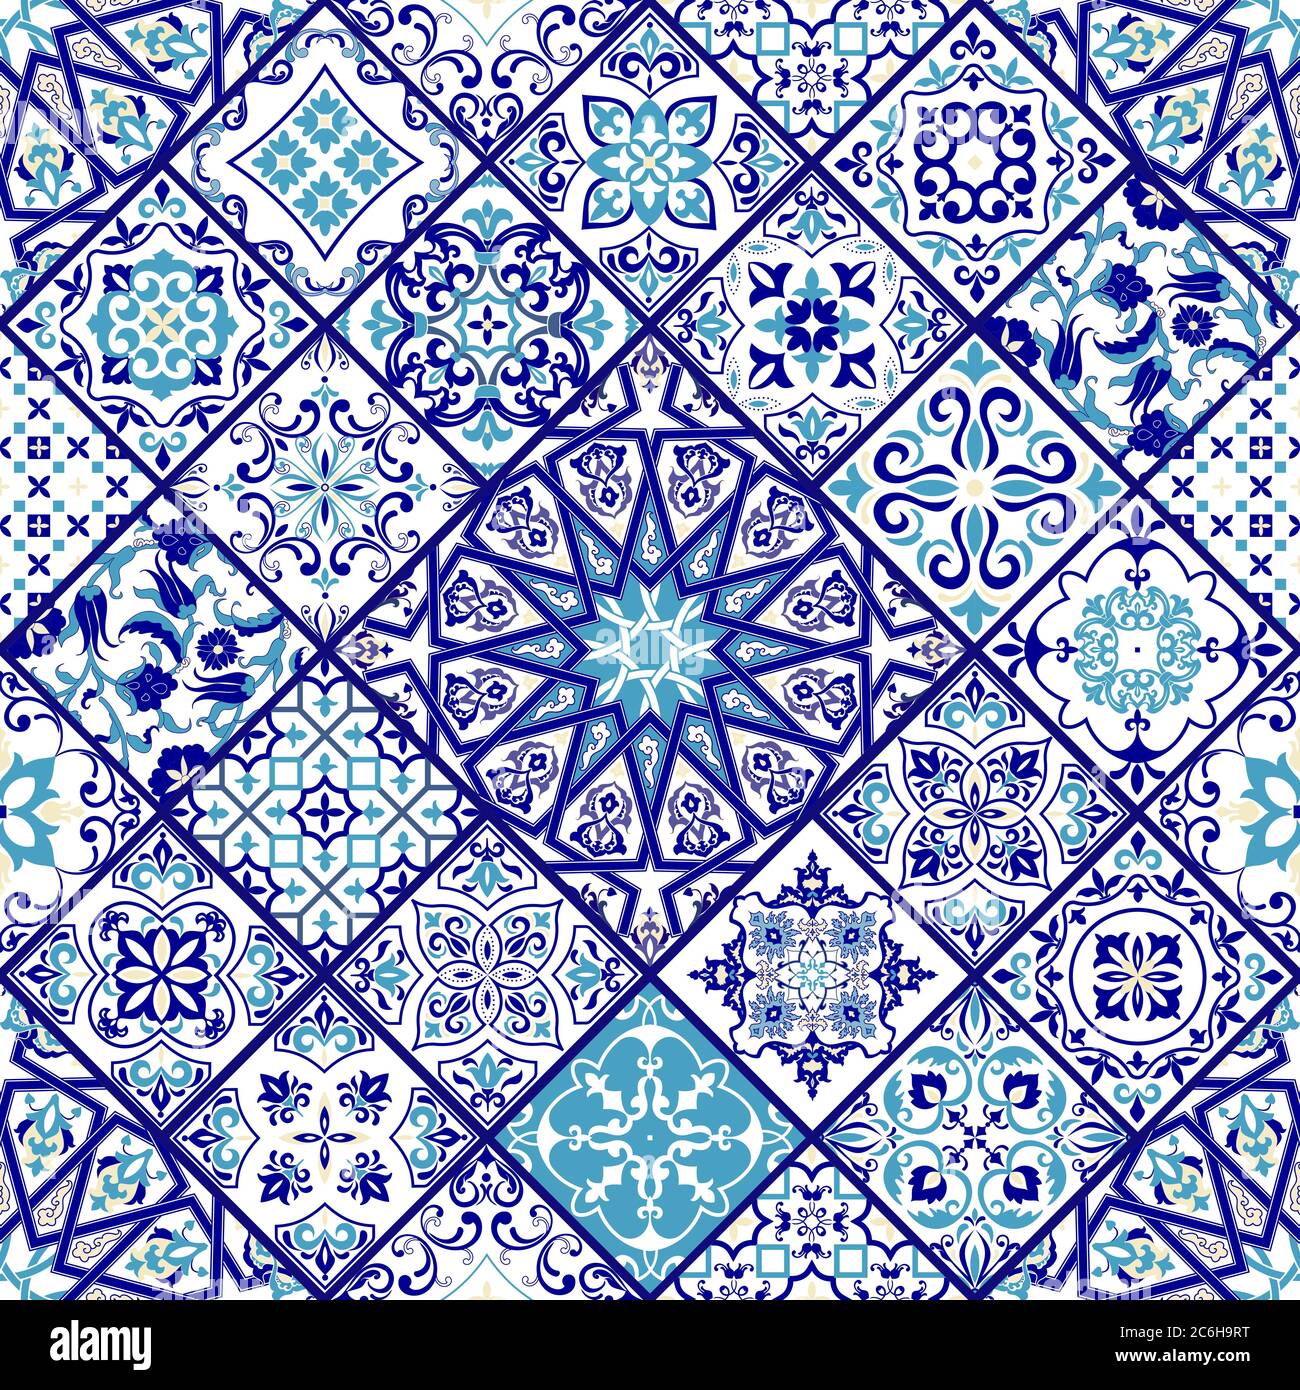 Nahtlose Patchwork-Fliesen in blau und weiß Farben. Endlose Muster kann für Keramikfliesen, Tapete, Linoleum, Textil, Web-Seite Hintergrund verwendet werden. Stock Vektor